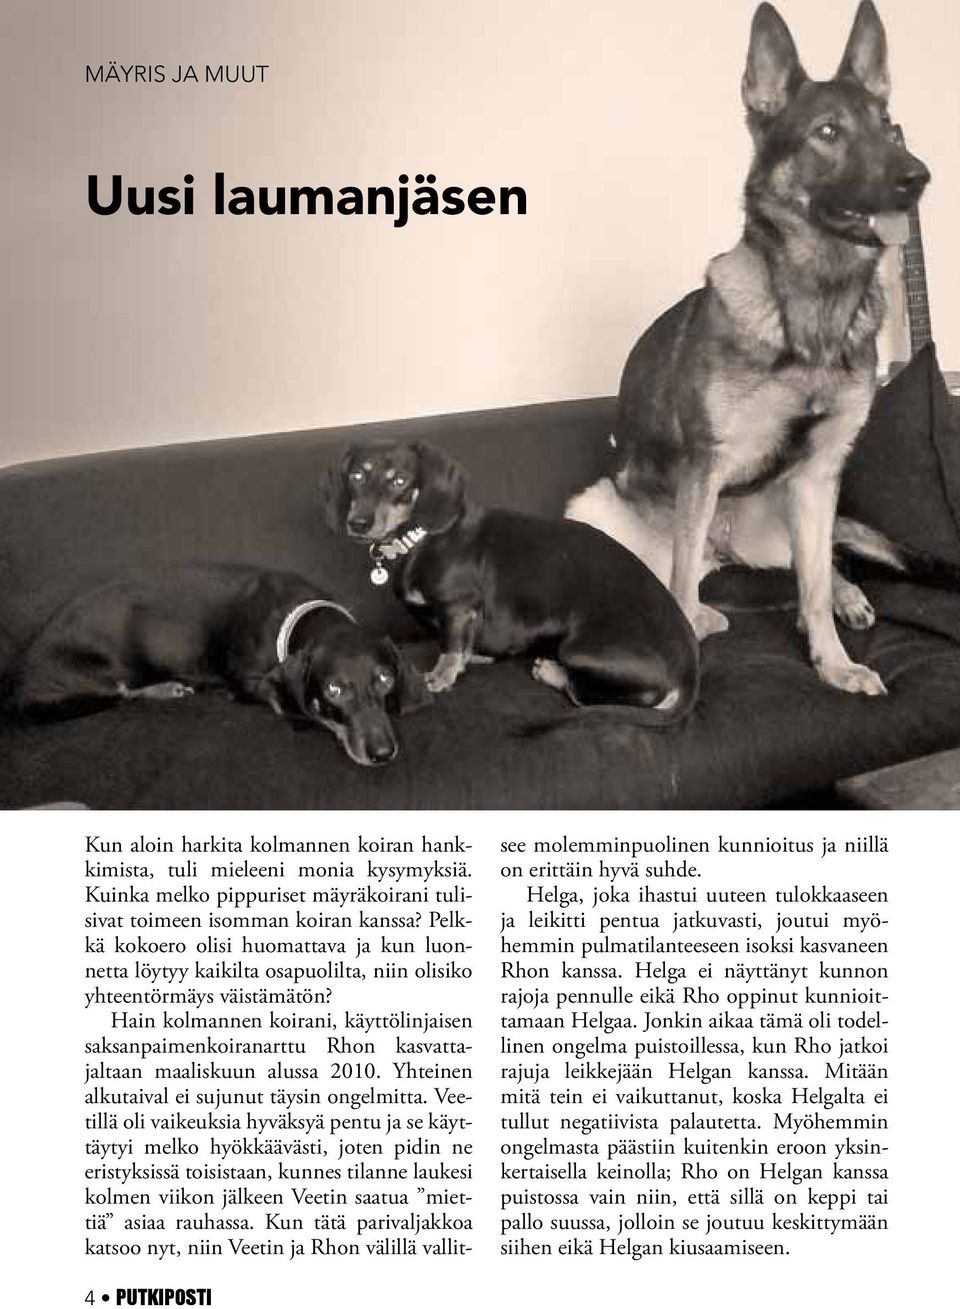 Hain kolmannen koirani, käyttölinjaisen saksanpaimenkoiranarttu Rhon kasvattajaltaan maaliskuun alussa 2010. Yhteinen alkutaival ei sujunut täysin ongelmitta.